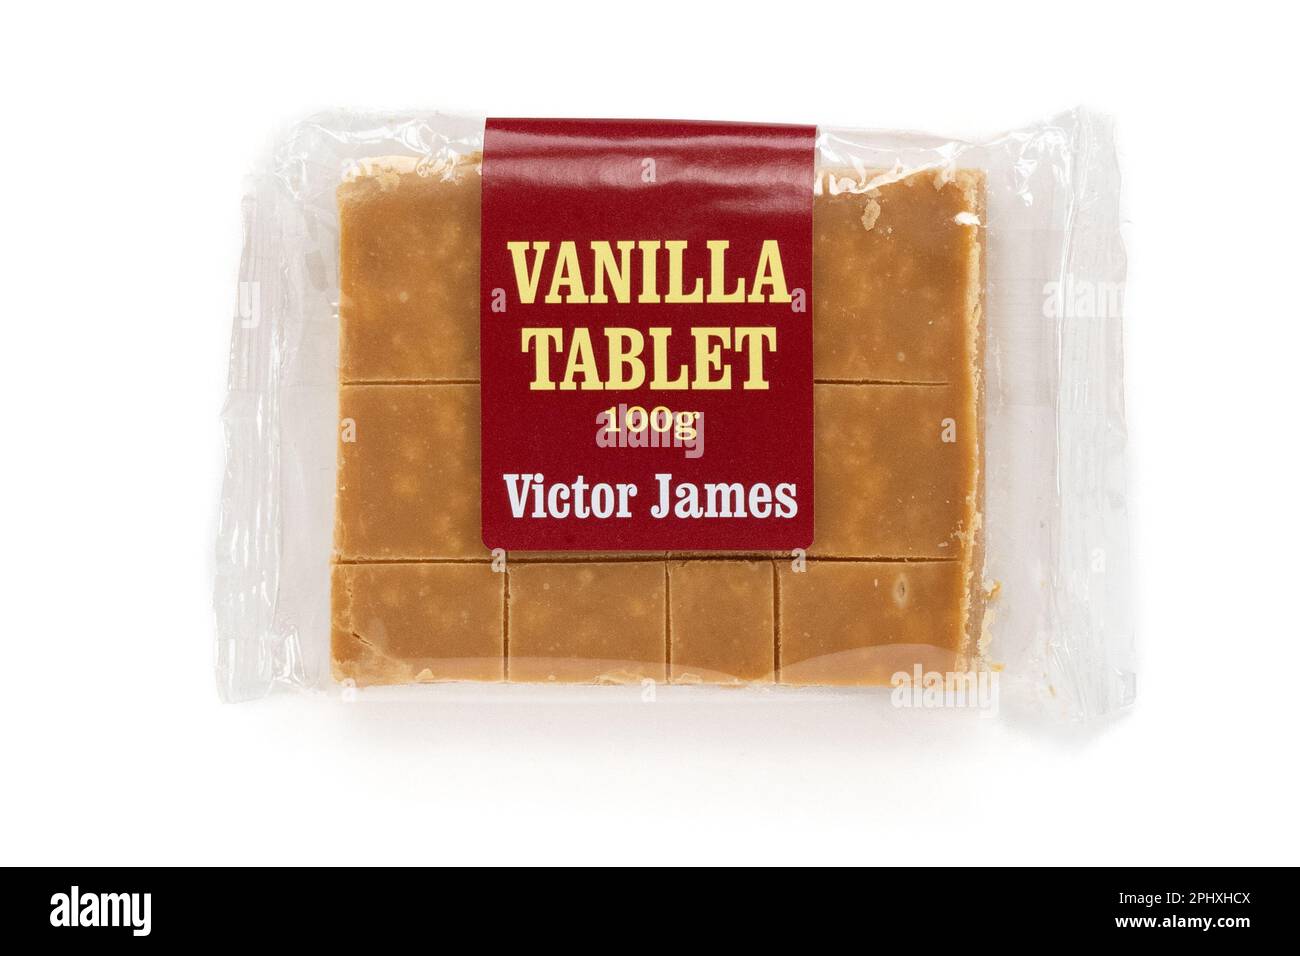 Schottische Tablette - Vanille-Tablette von Victor James Stockfoto